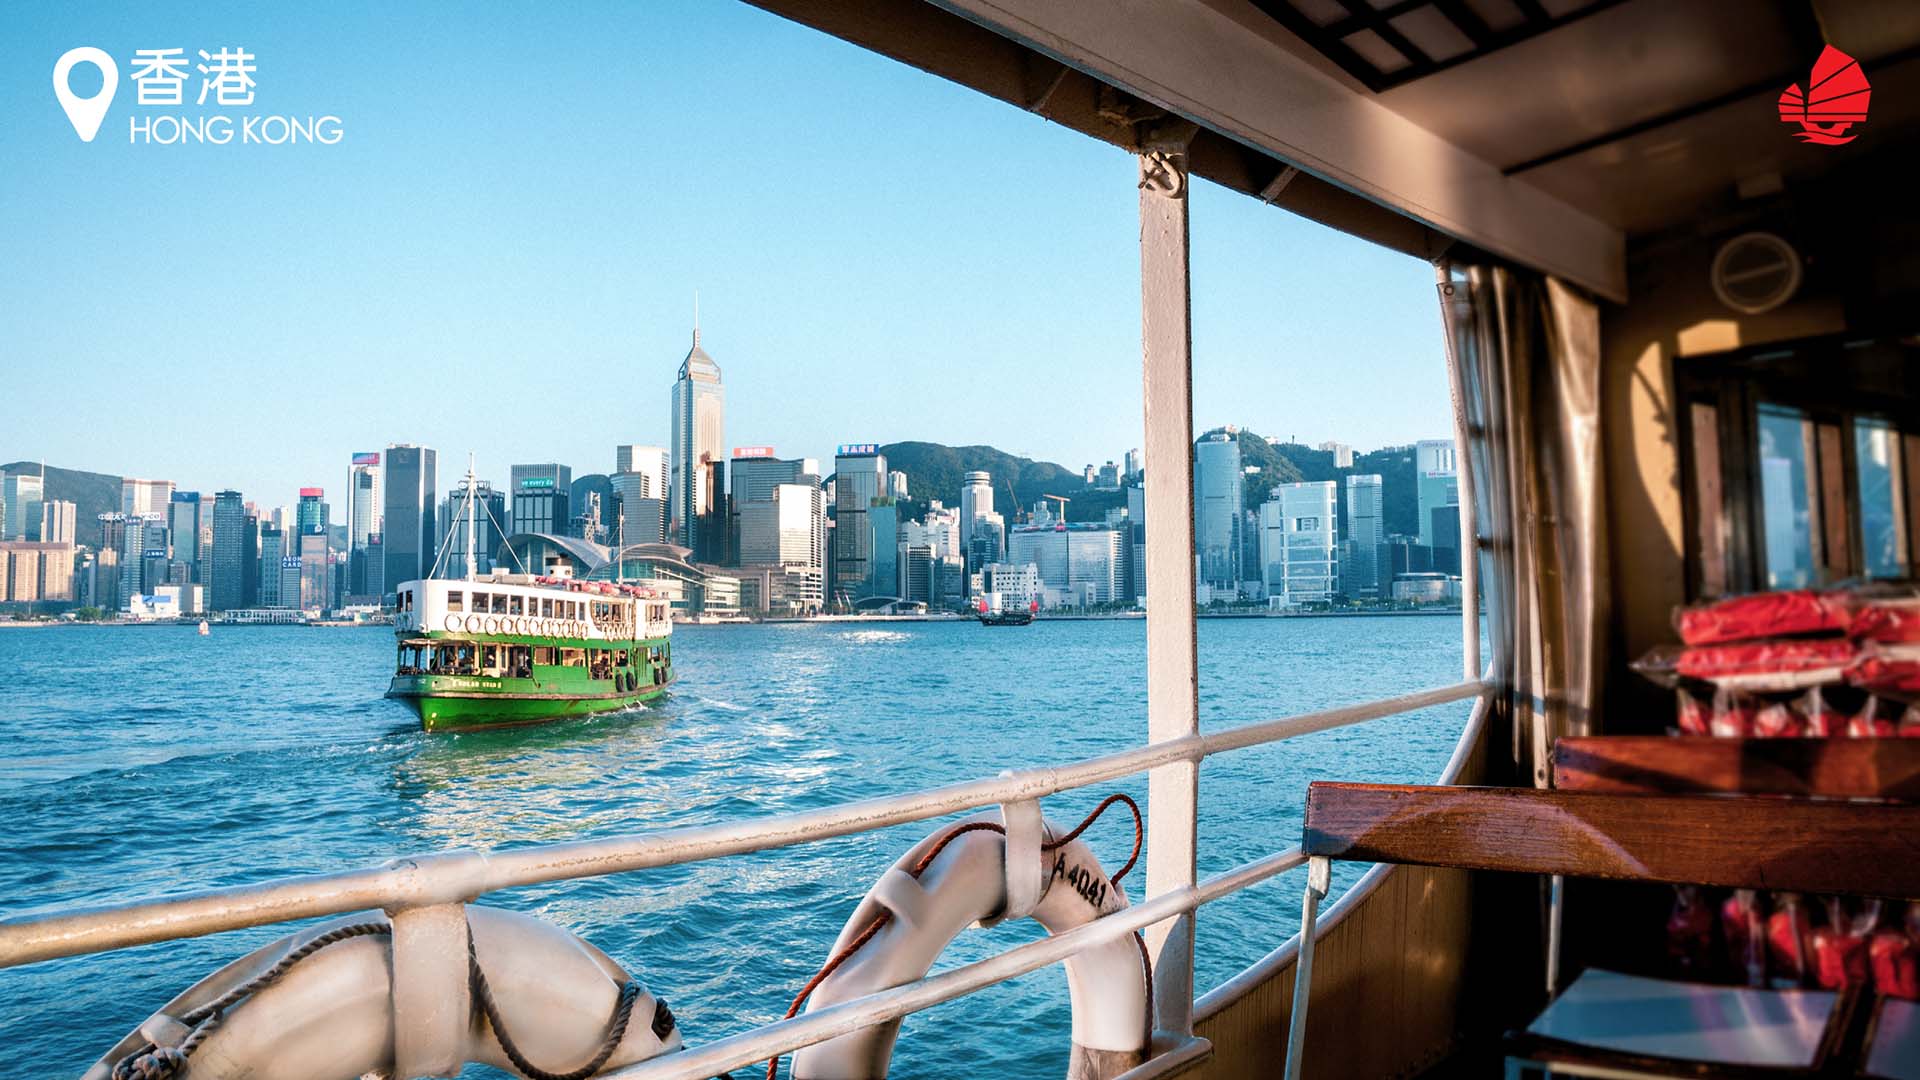 Những bức ảnh nền ảo về Hong Kong sẽ đưa bạn đến những khung cảnh tuyệt đẹp của thành phố ánh đèn. Hãy cùng khám phá những khu vực du lịch nổi tiếng và tìm hiểu về văn hóa, lịch sử của Hong Kong qua các ảnh nền đẹp này.